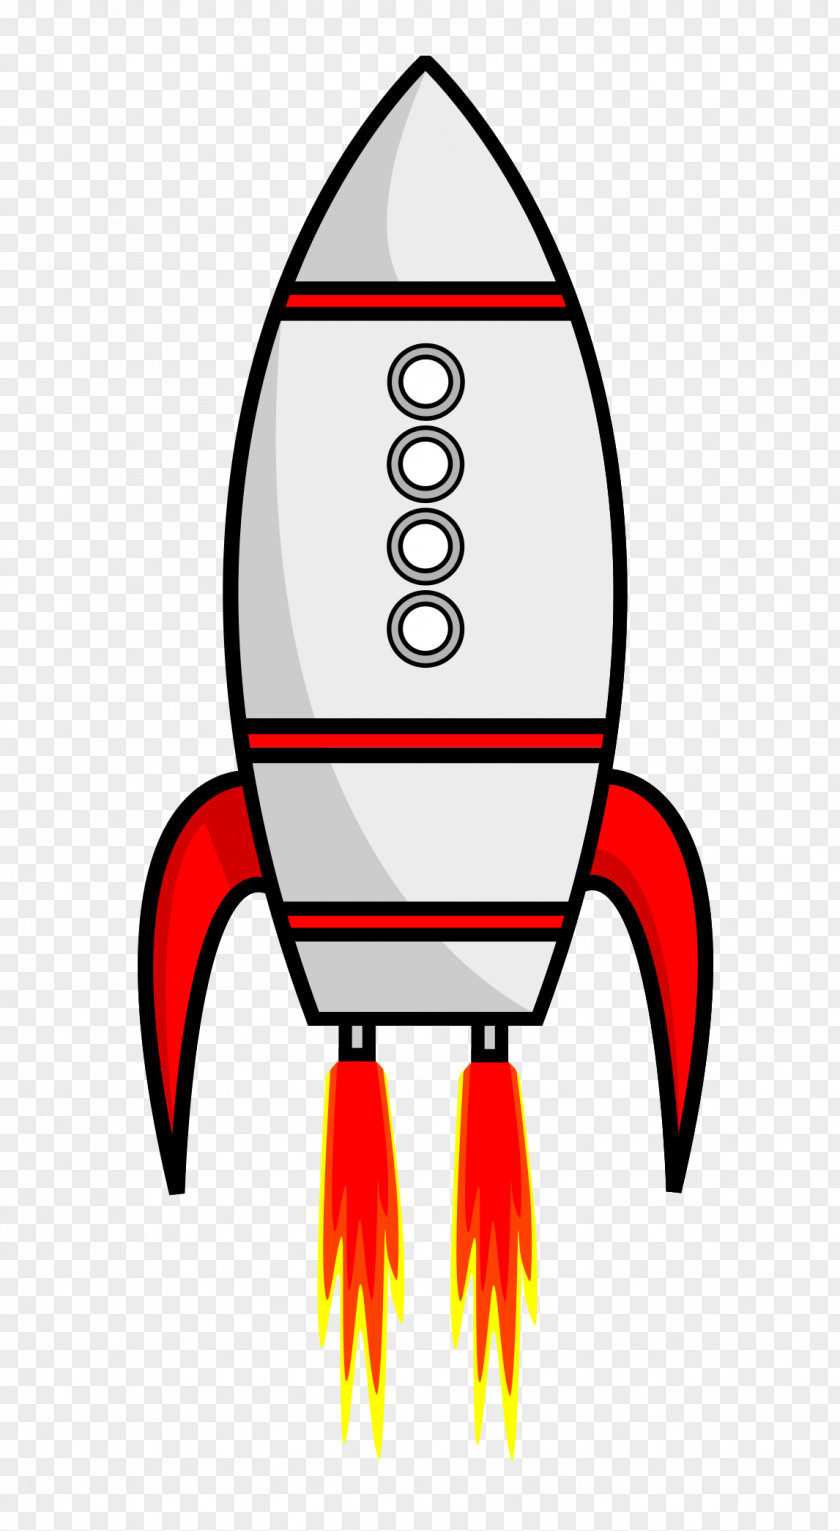 Rocket Vectot Spacecraft Cartoon PNG